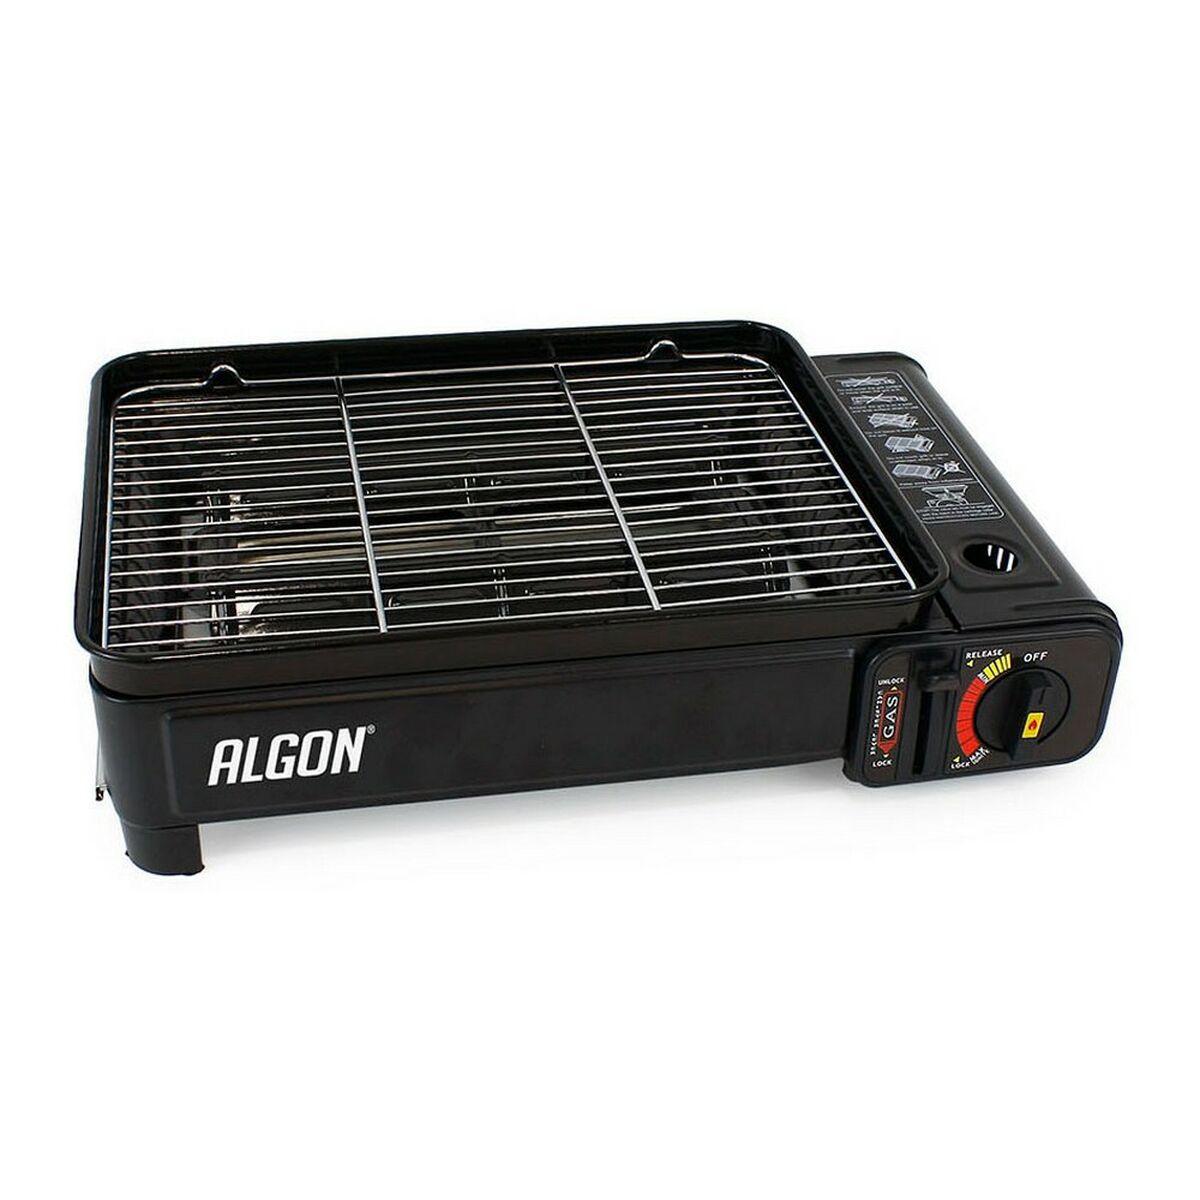 gas stove Algon Laptop Black (43 x 28 x 11,2 cm) - VirtuousWares:Global